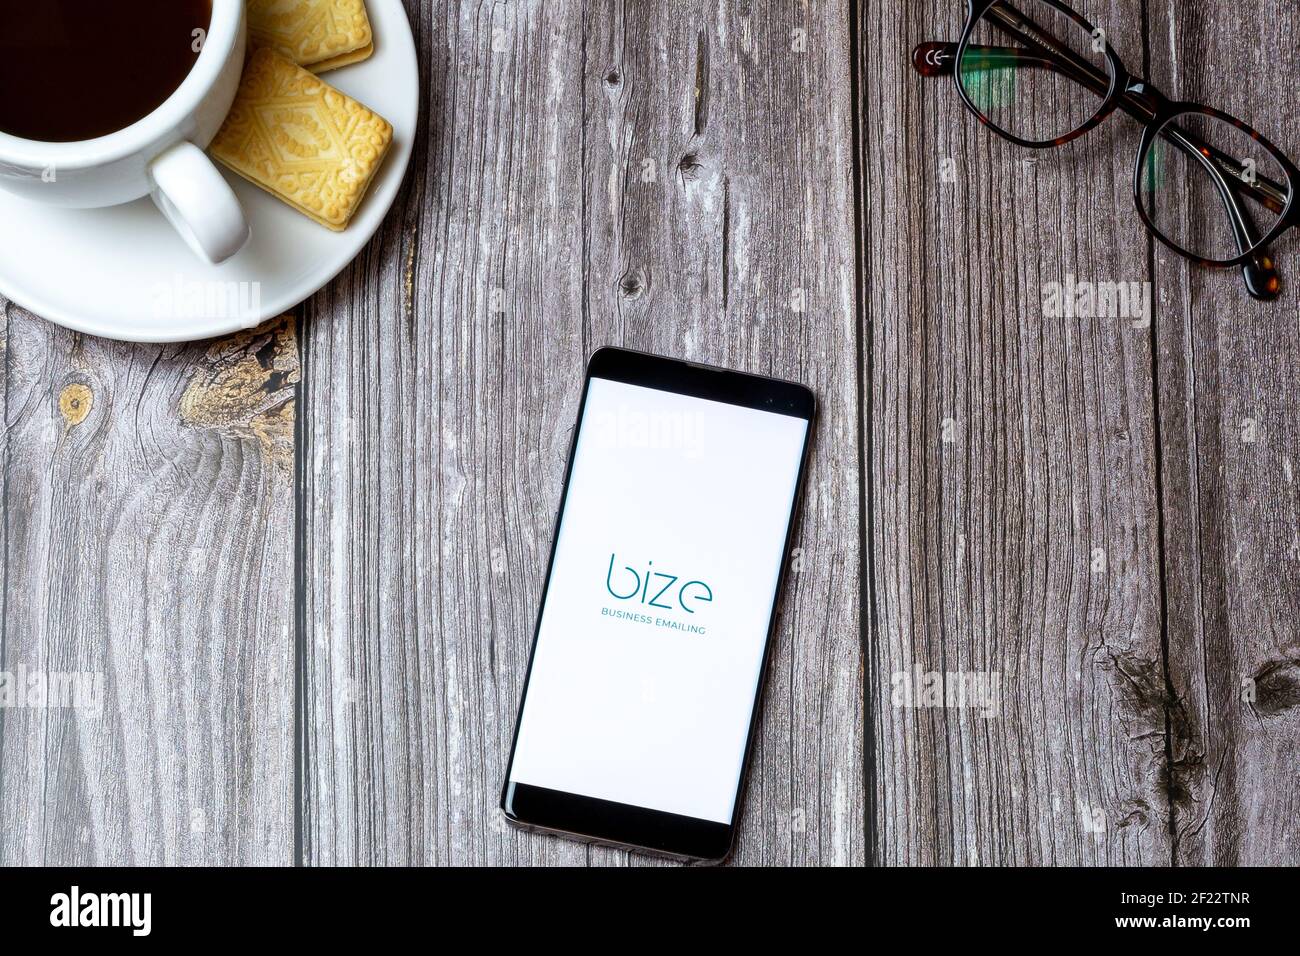 Un telefono cellulare o cellulare su un tavolo di legno Con l'app e-mail Bize Business aperta accanto a caffè Foto Stock